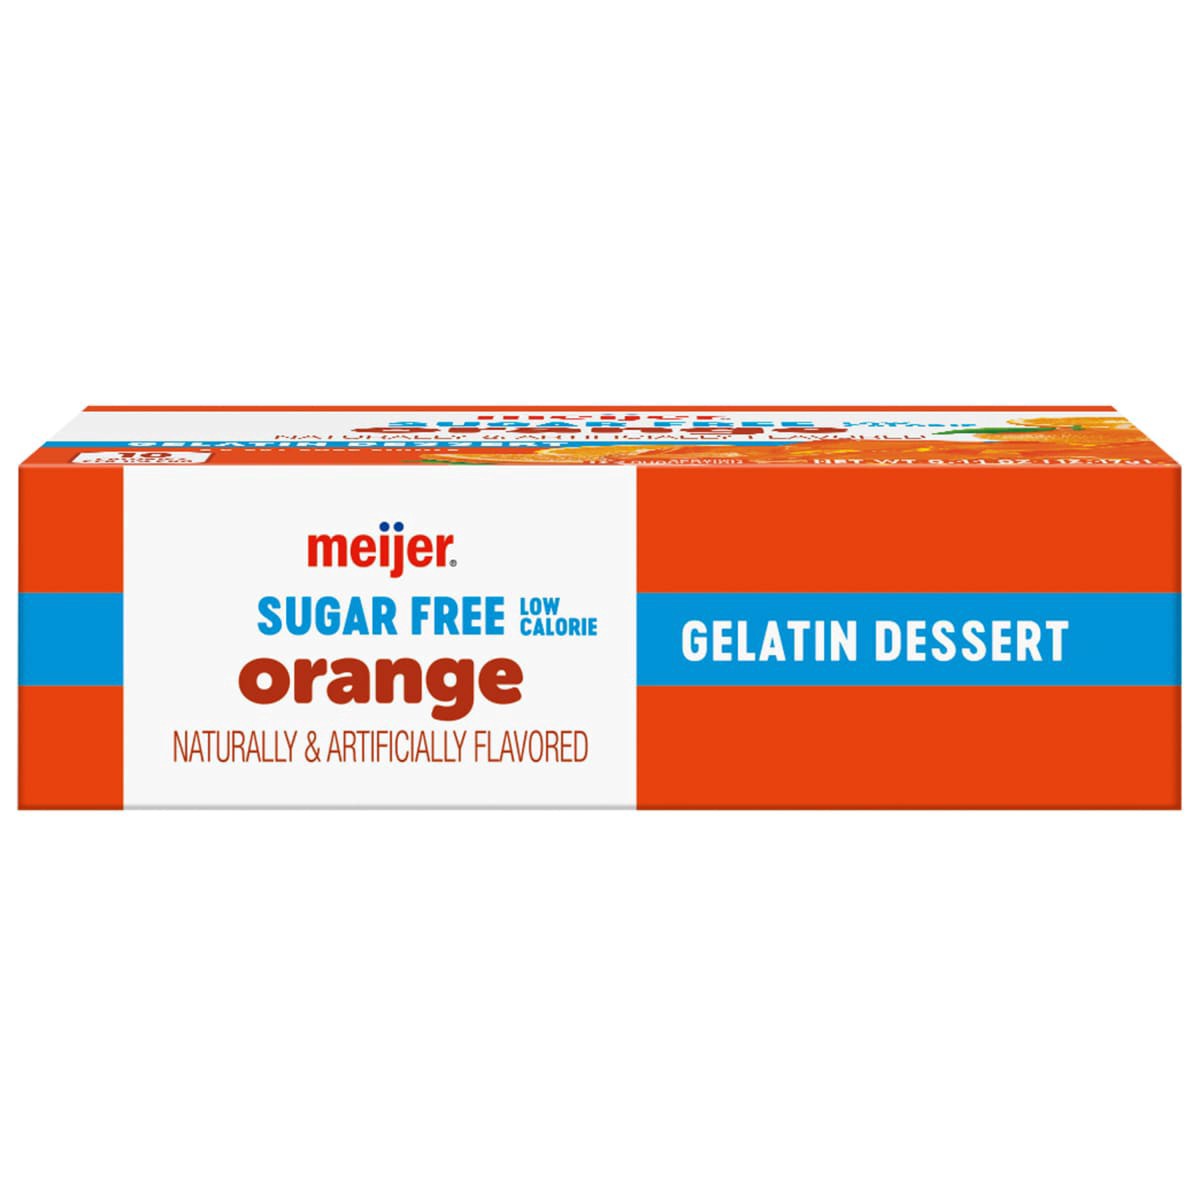 slide 29 of 29, Meijer Sugar Free Orange Dessert Gelatin, 0.44 oz